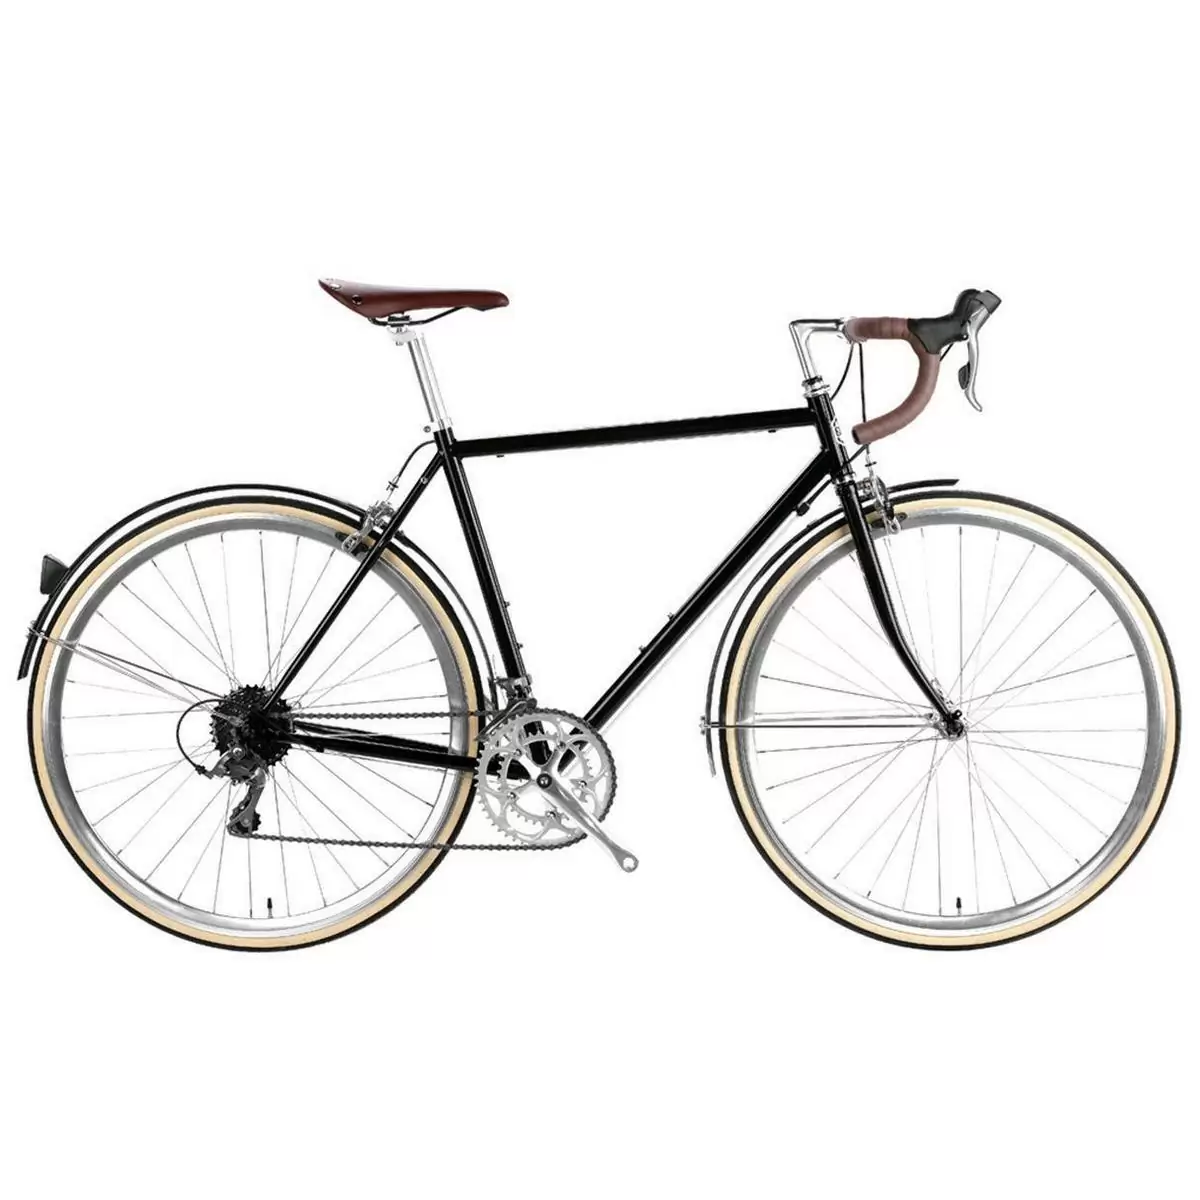 City bike TROY 16spd Del Rey black large 58cm - image